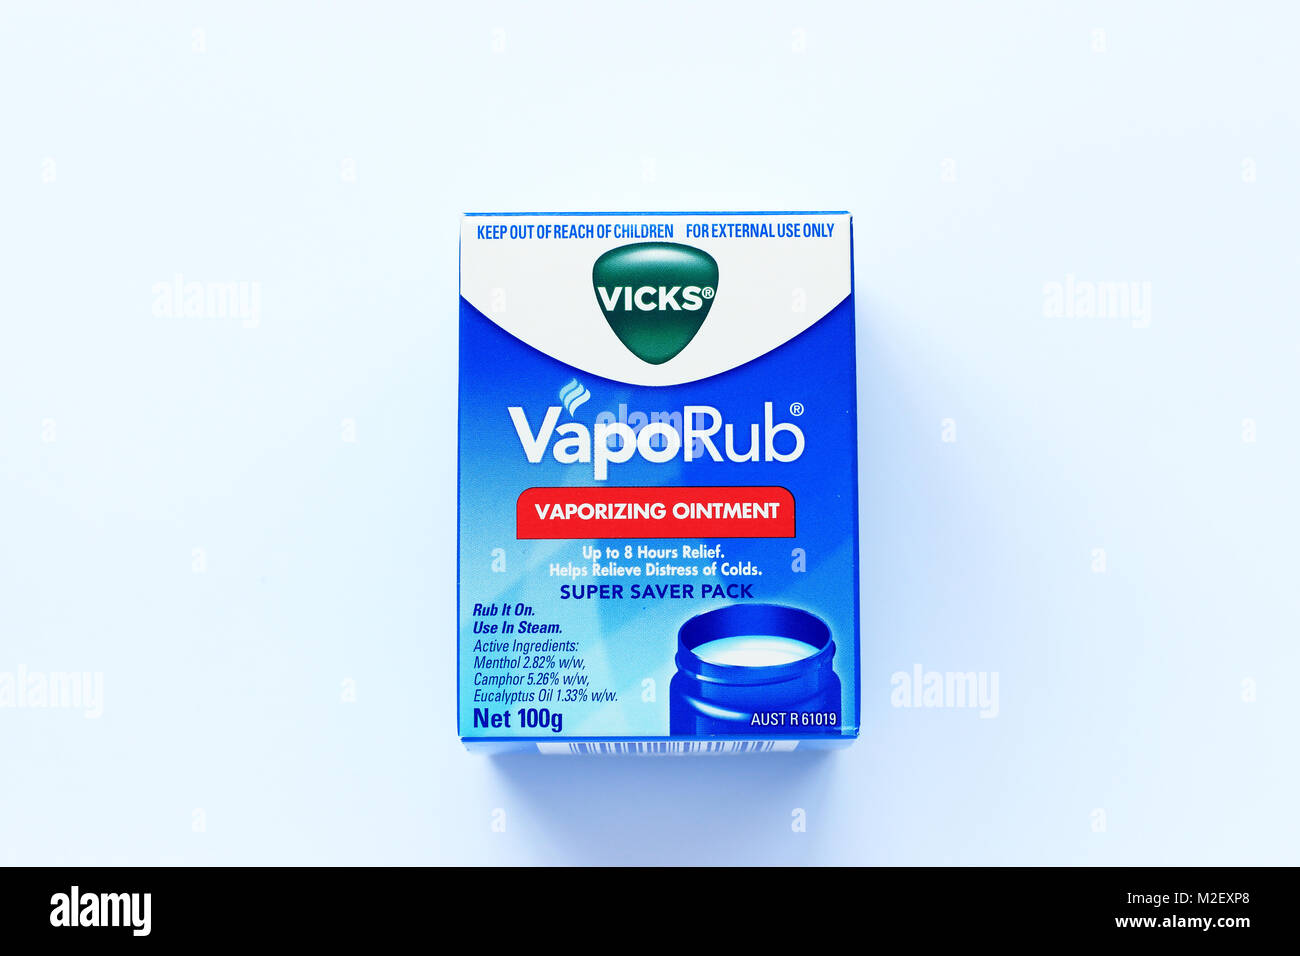 Vicks Vaporub Vapourising Ointment Jar Isolated on white background Stock Photo